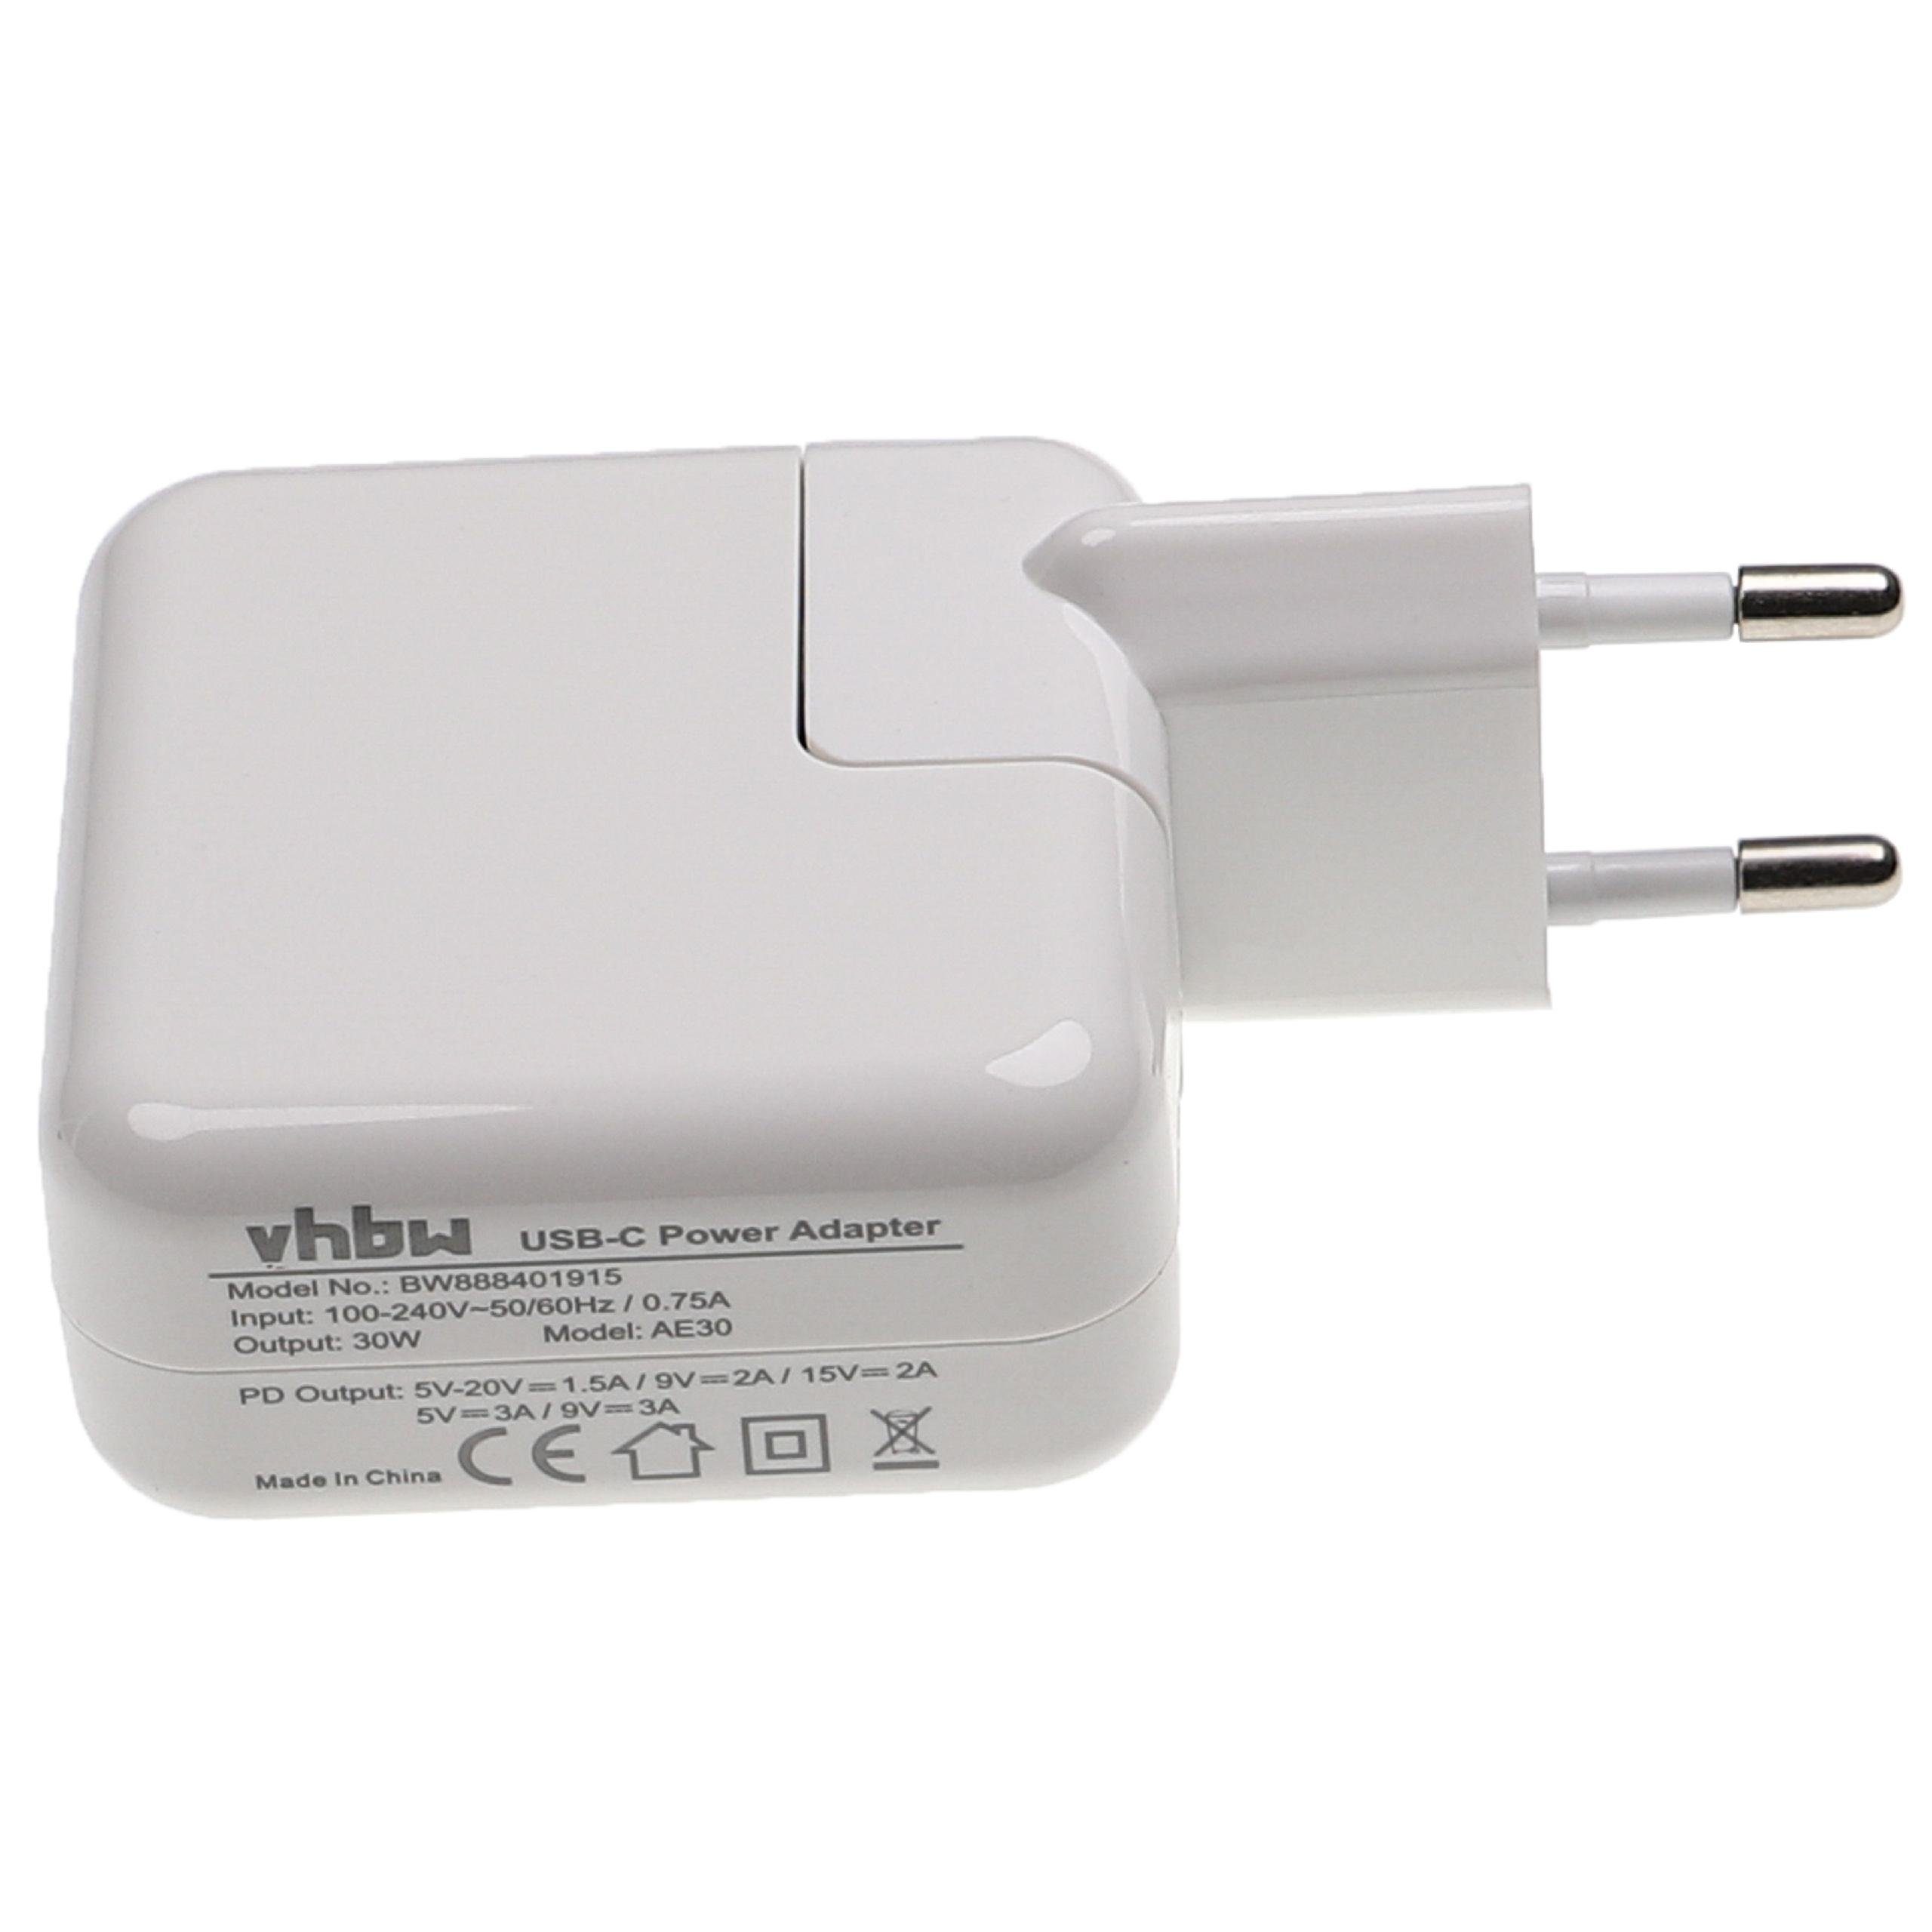 vhbw passend für Apple Macbook Pro 13" 2016, 13" 2020, 13" 2019, 13" 2018, USB-Adapter